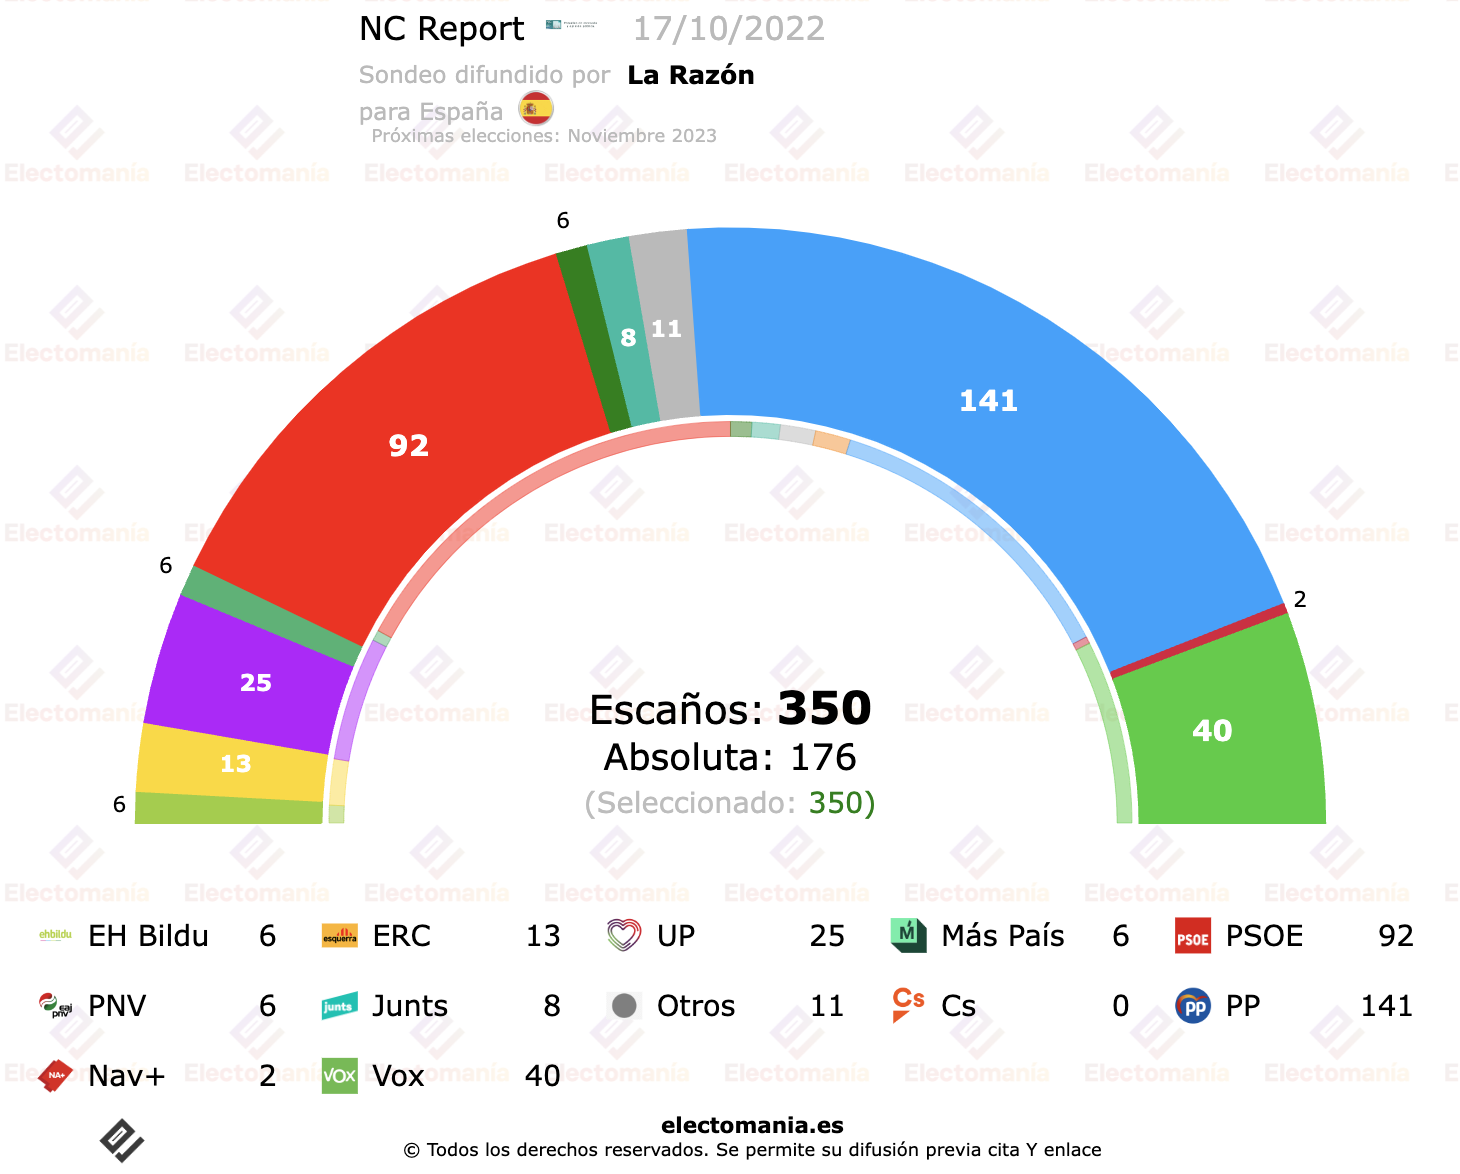 NC Report (17oct) situación estable con ligera subida en votos del